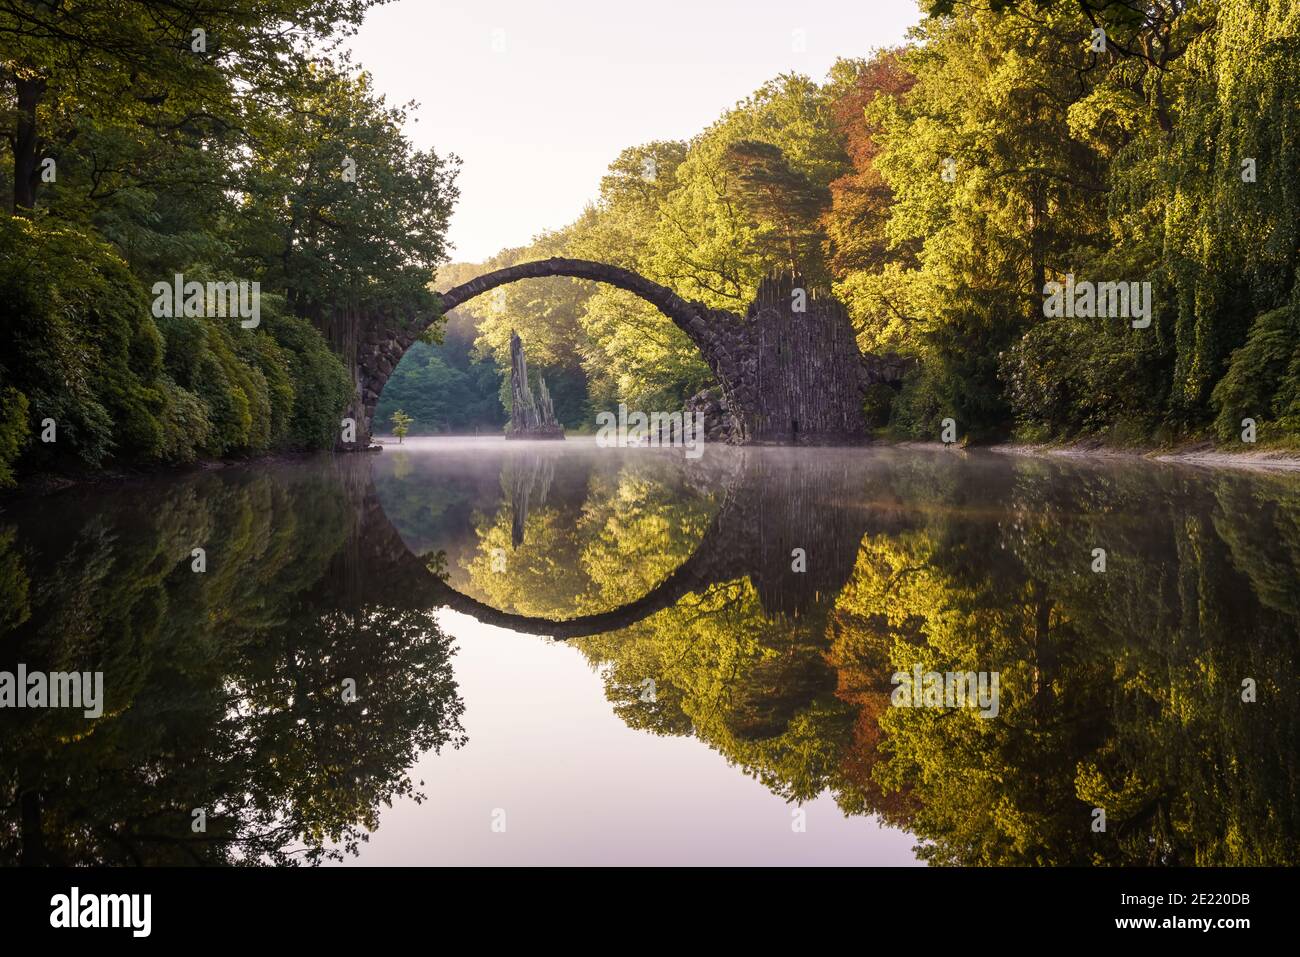 Medieval Rakotz Bridge in Gablenz Germany Stock Photo